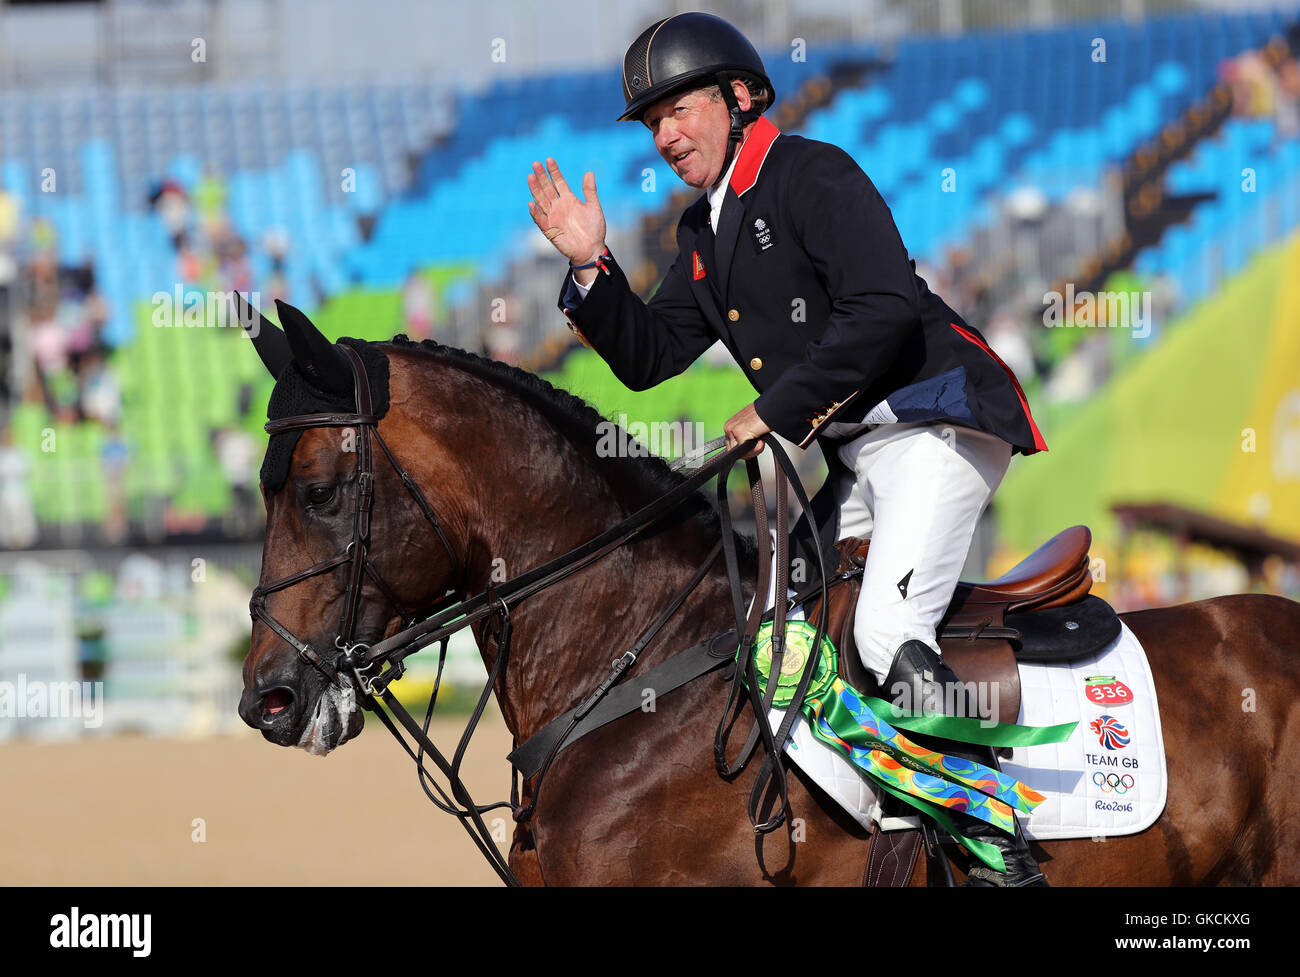 La société britannique Nick Skelton a remporté une médaille d'or sur grande star dans l'individu au saut d'Centre Equestre Olympique le quatorzième jour du temps des Jeux Olympiques de Rio, au Brésil. Banque D'Images